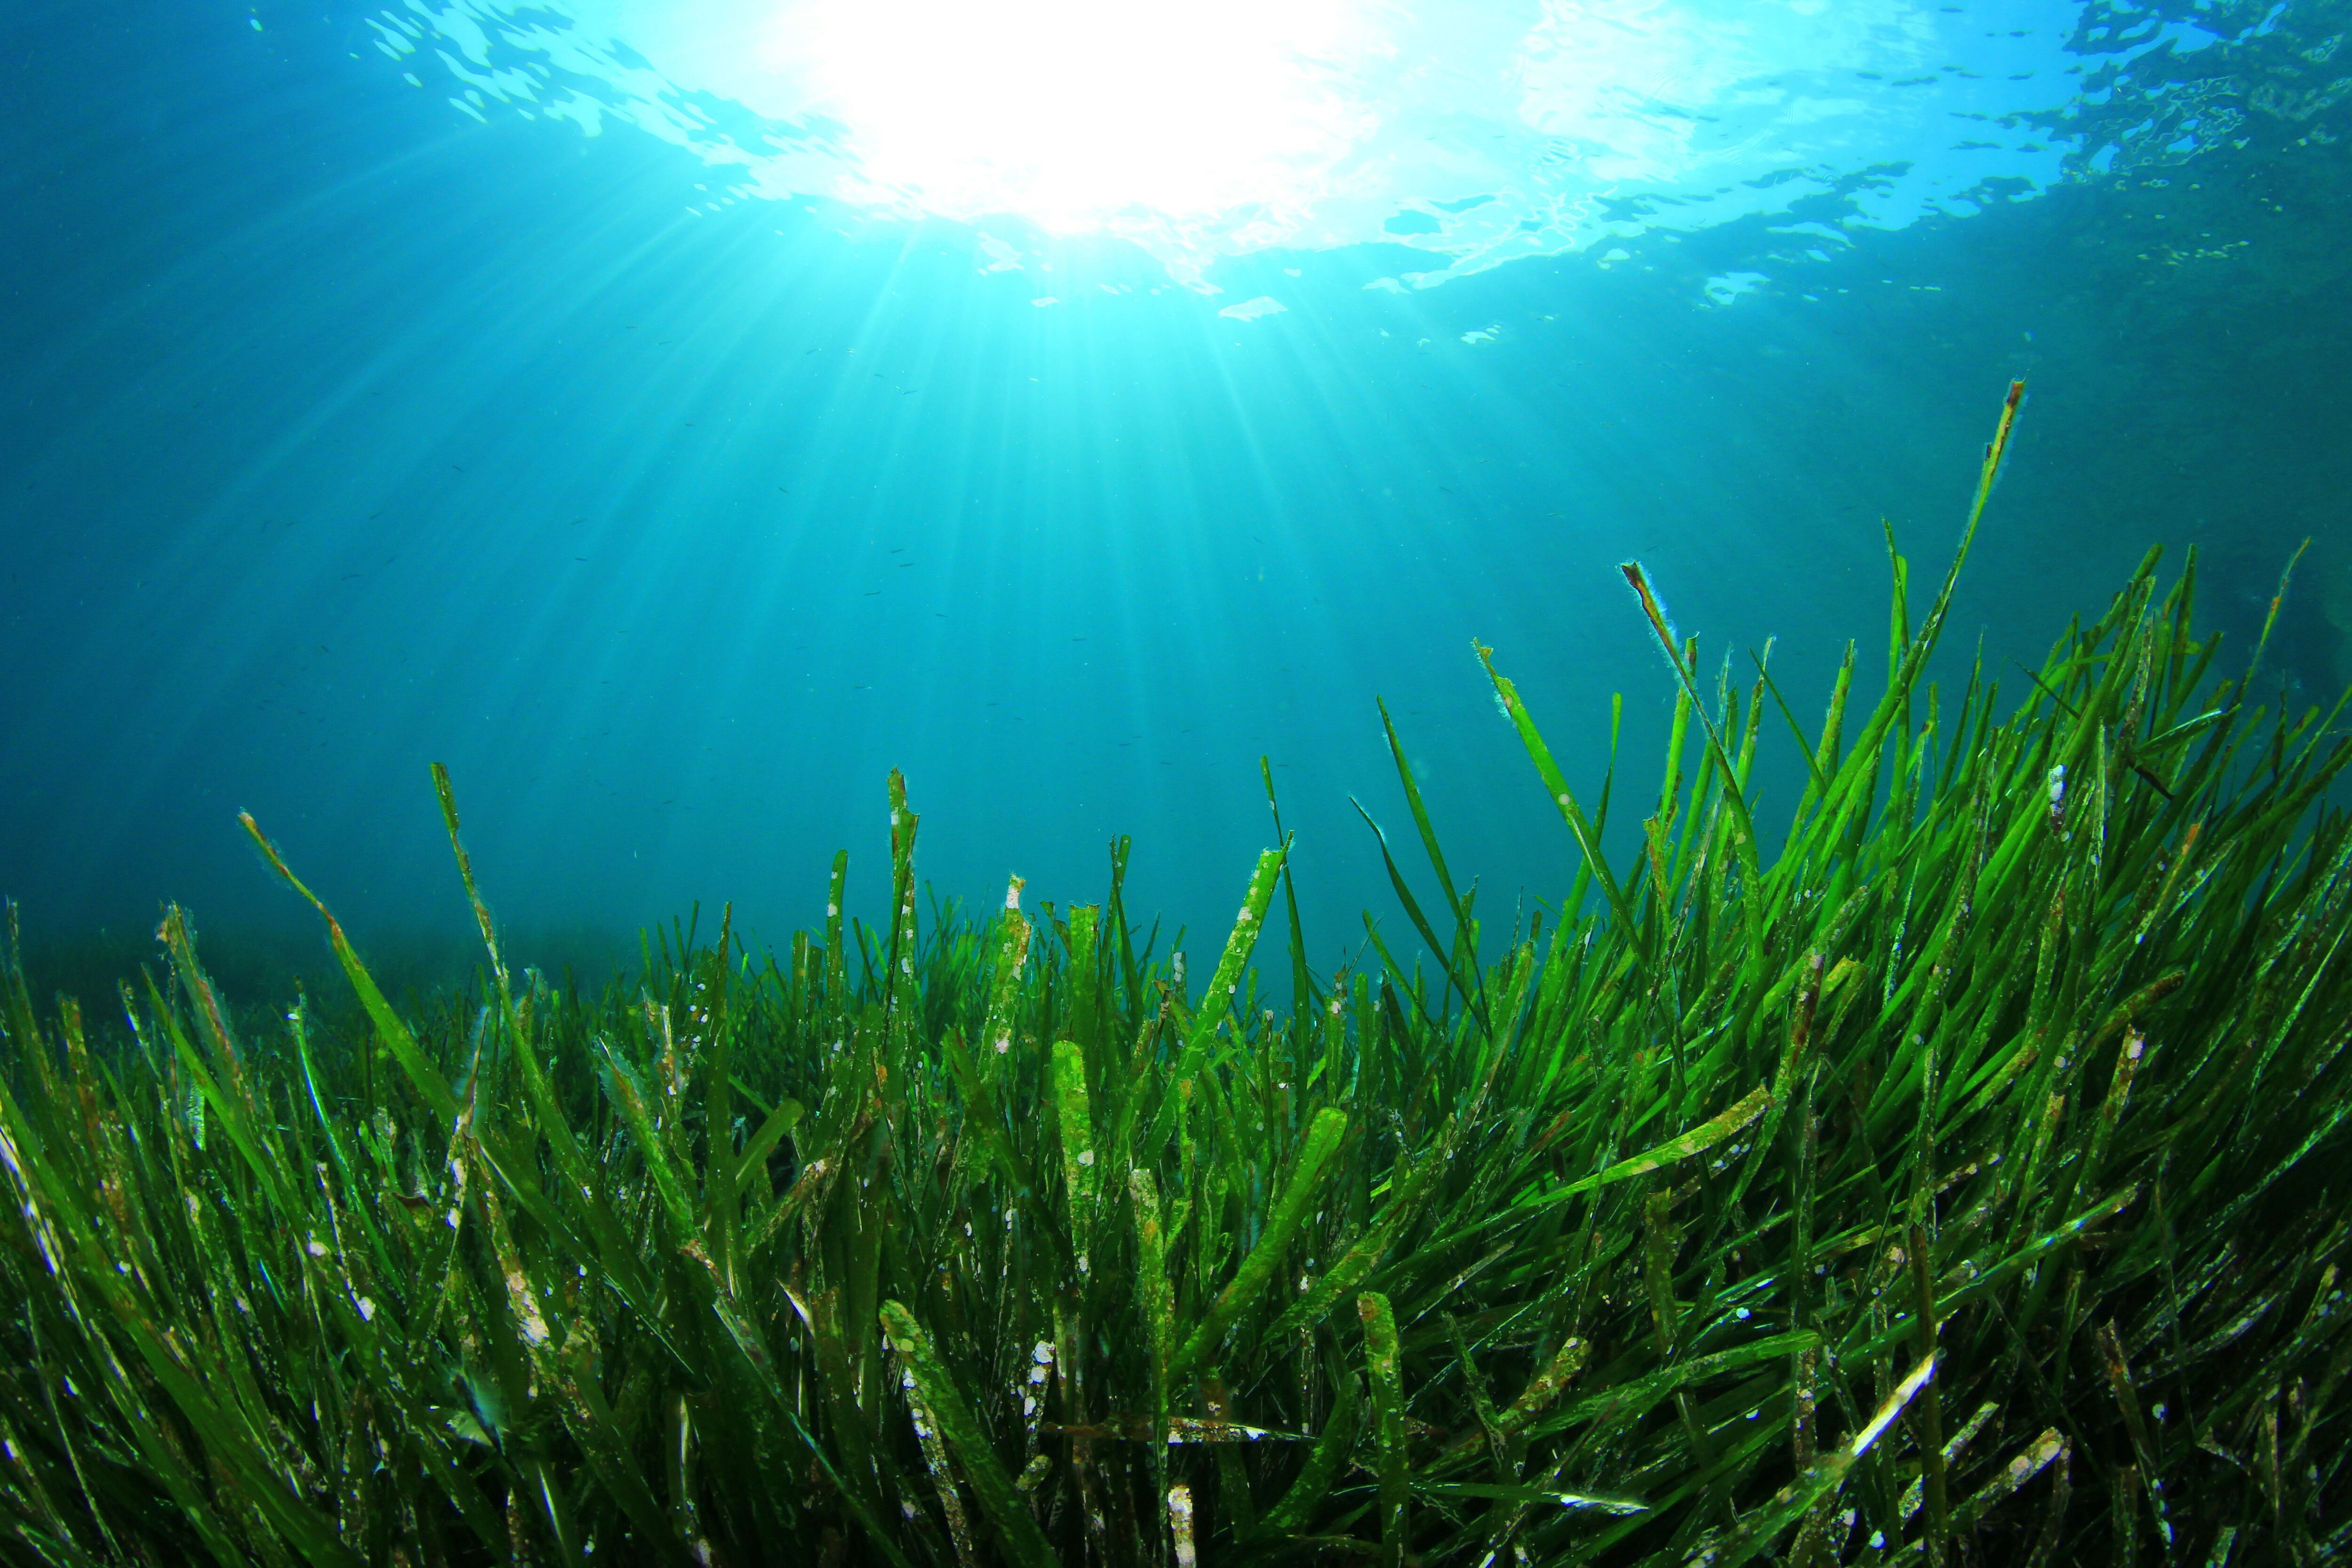 Fondo marino cubierto de posidonia oceánica. Esta especie no es un alga, sino una planta adaptada a vivir bajo el agua, que solo vive en el Mediterráneo.